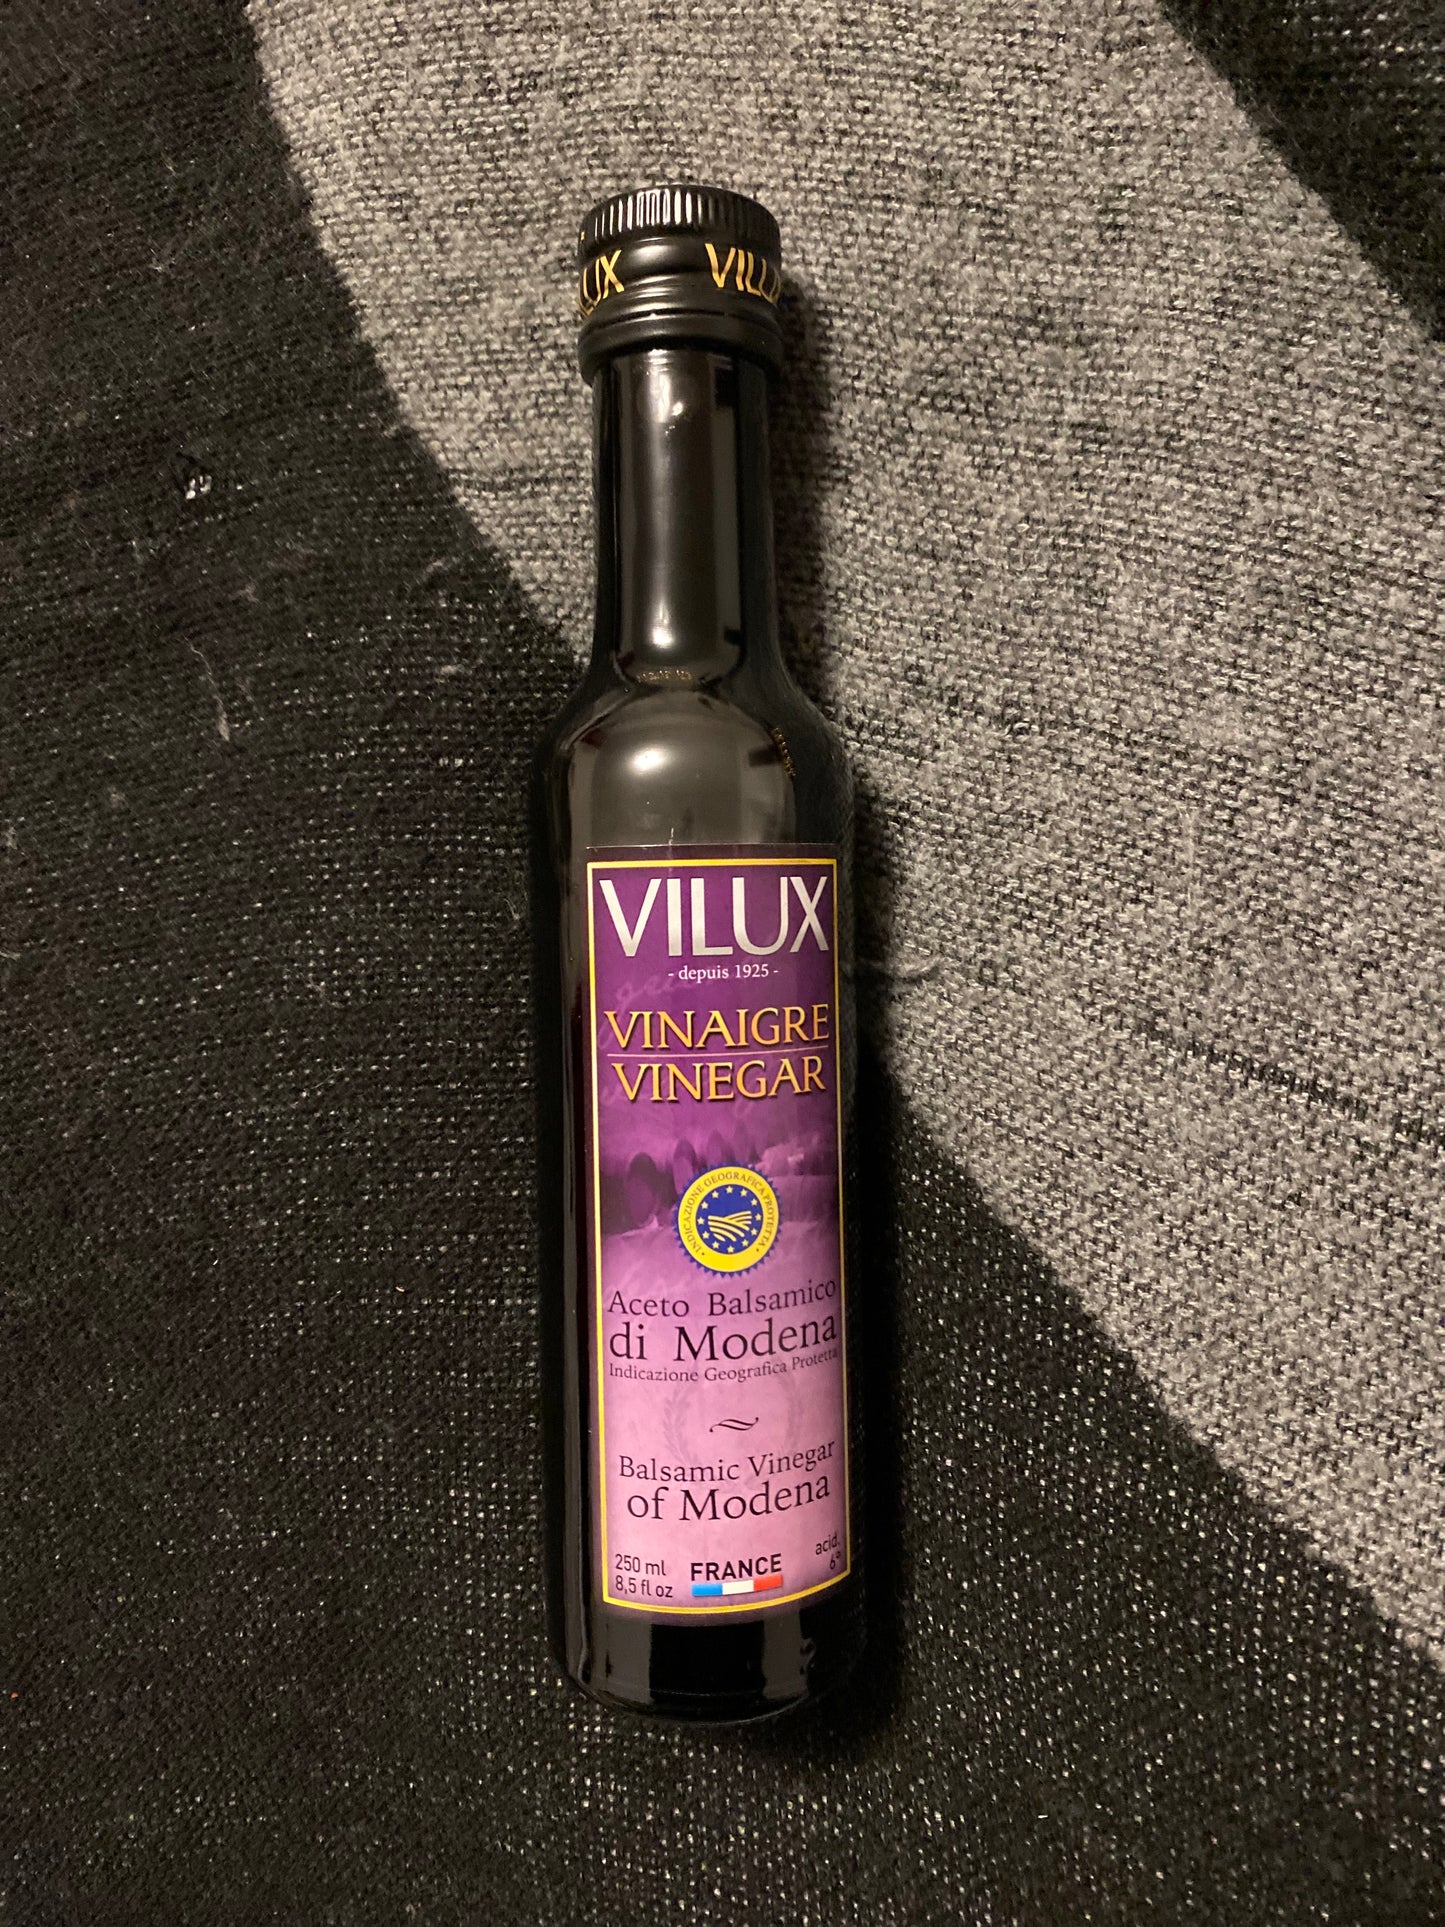 Vilux Balsamic Vinegar